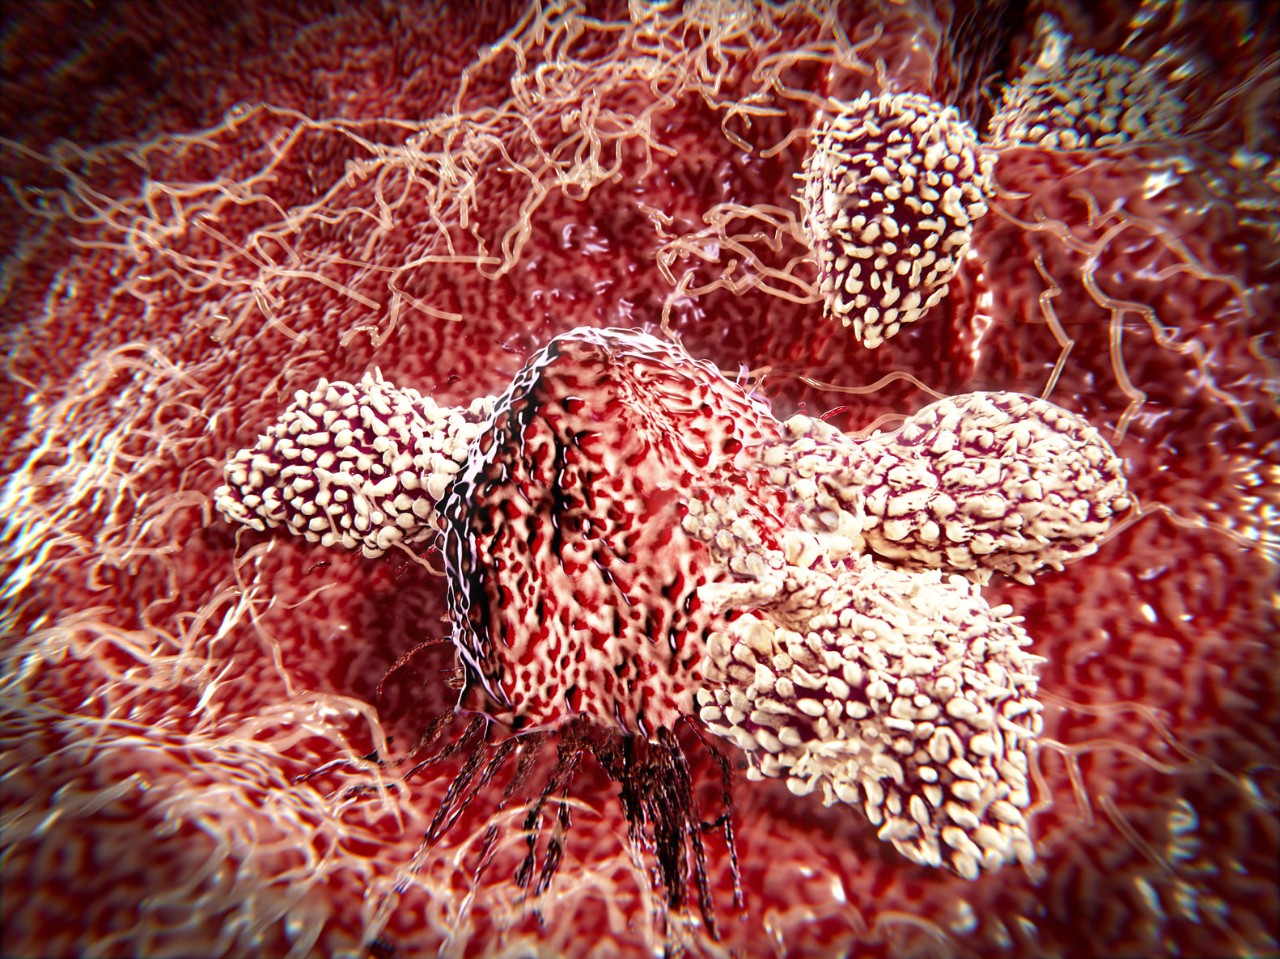 Les cellules NK ont gagné leur réputation de cellules « tueuses » il y a près de 40 ans, lorsque les chercheurs ont observé la rapidité de la réponse immunitaire de ces lymphocytes, au moment de détruire les cellules hôtes infectées par un virus ou les cellules tumorales. Les cellules NK semblaient capables de s'attacher spontanément, sans activation préalable.